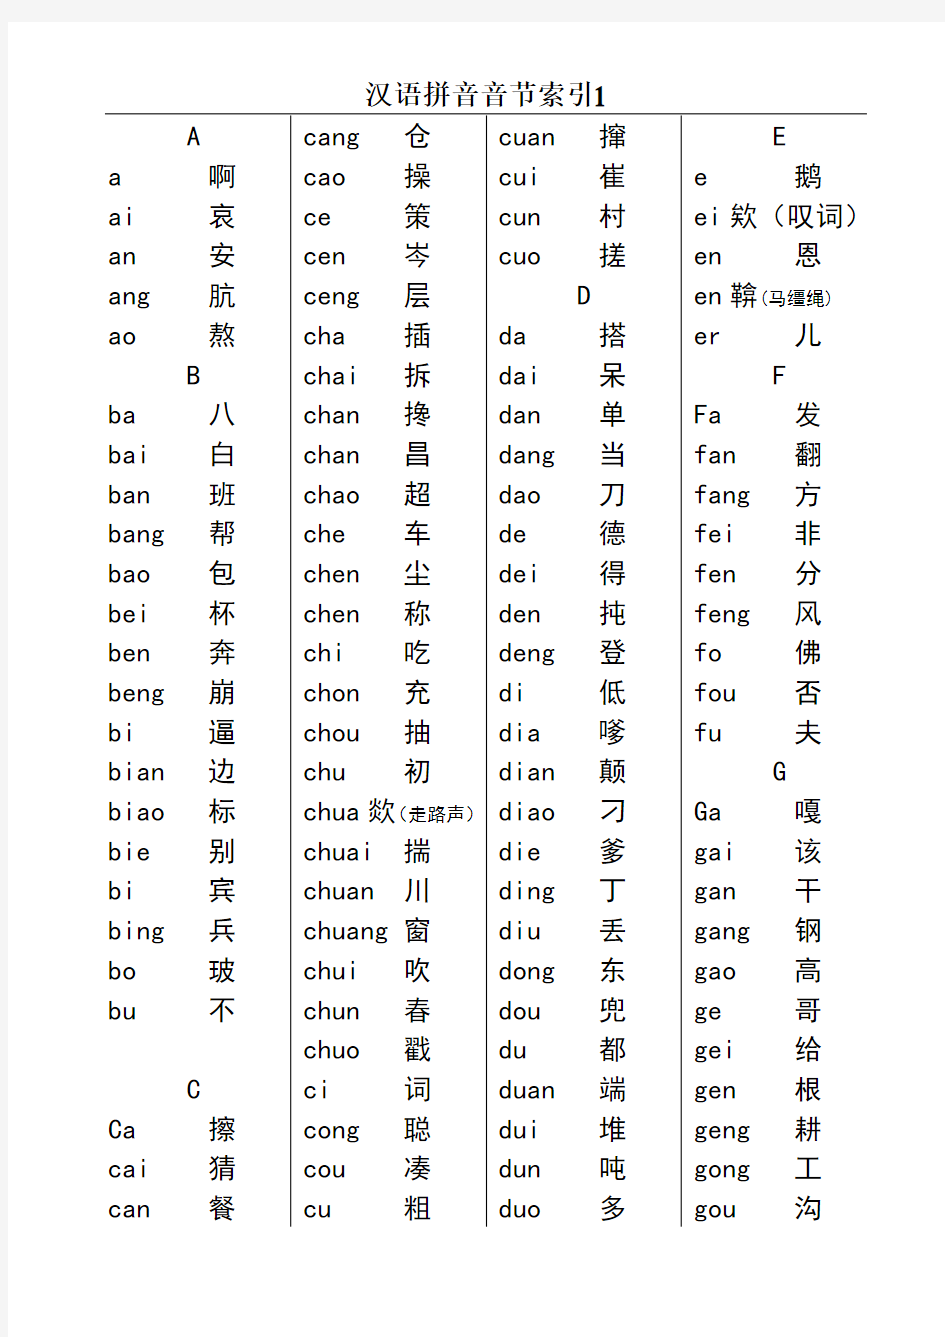 汉语拼音音节索引表(很漂亮的完整版)